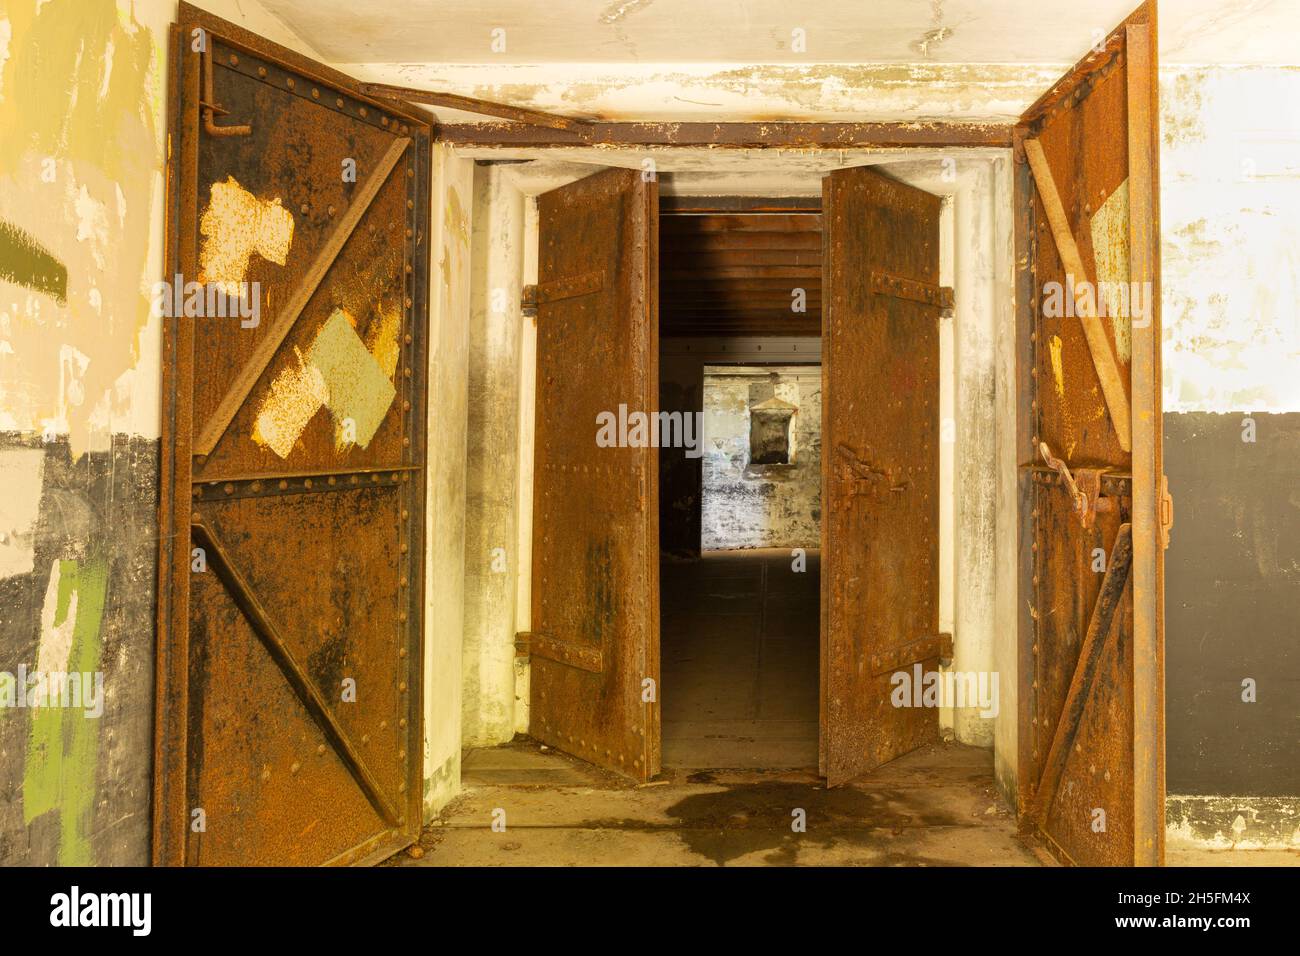 WA19771-00...WASHINGTON - Eingang zum unterirdischen Bereich eines Batteriegebäudes im historischen Fort worden in Port Townsend. Stockfoto